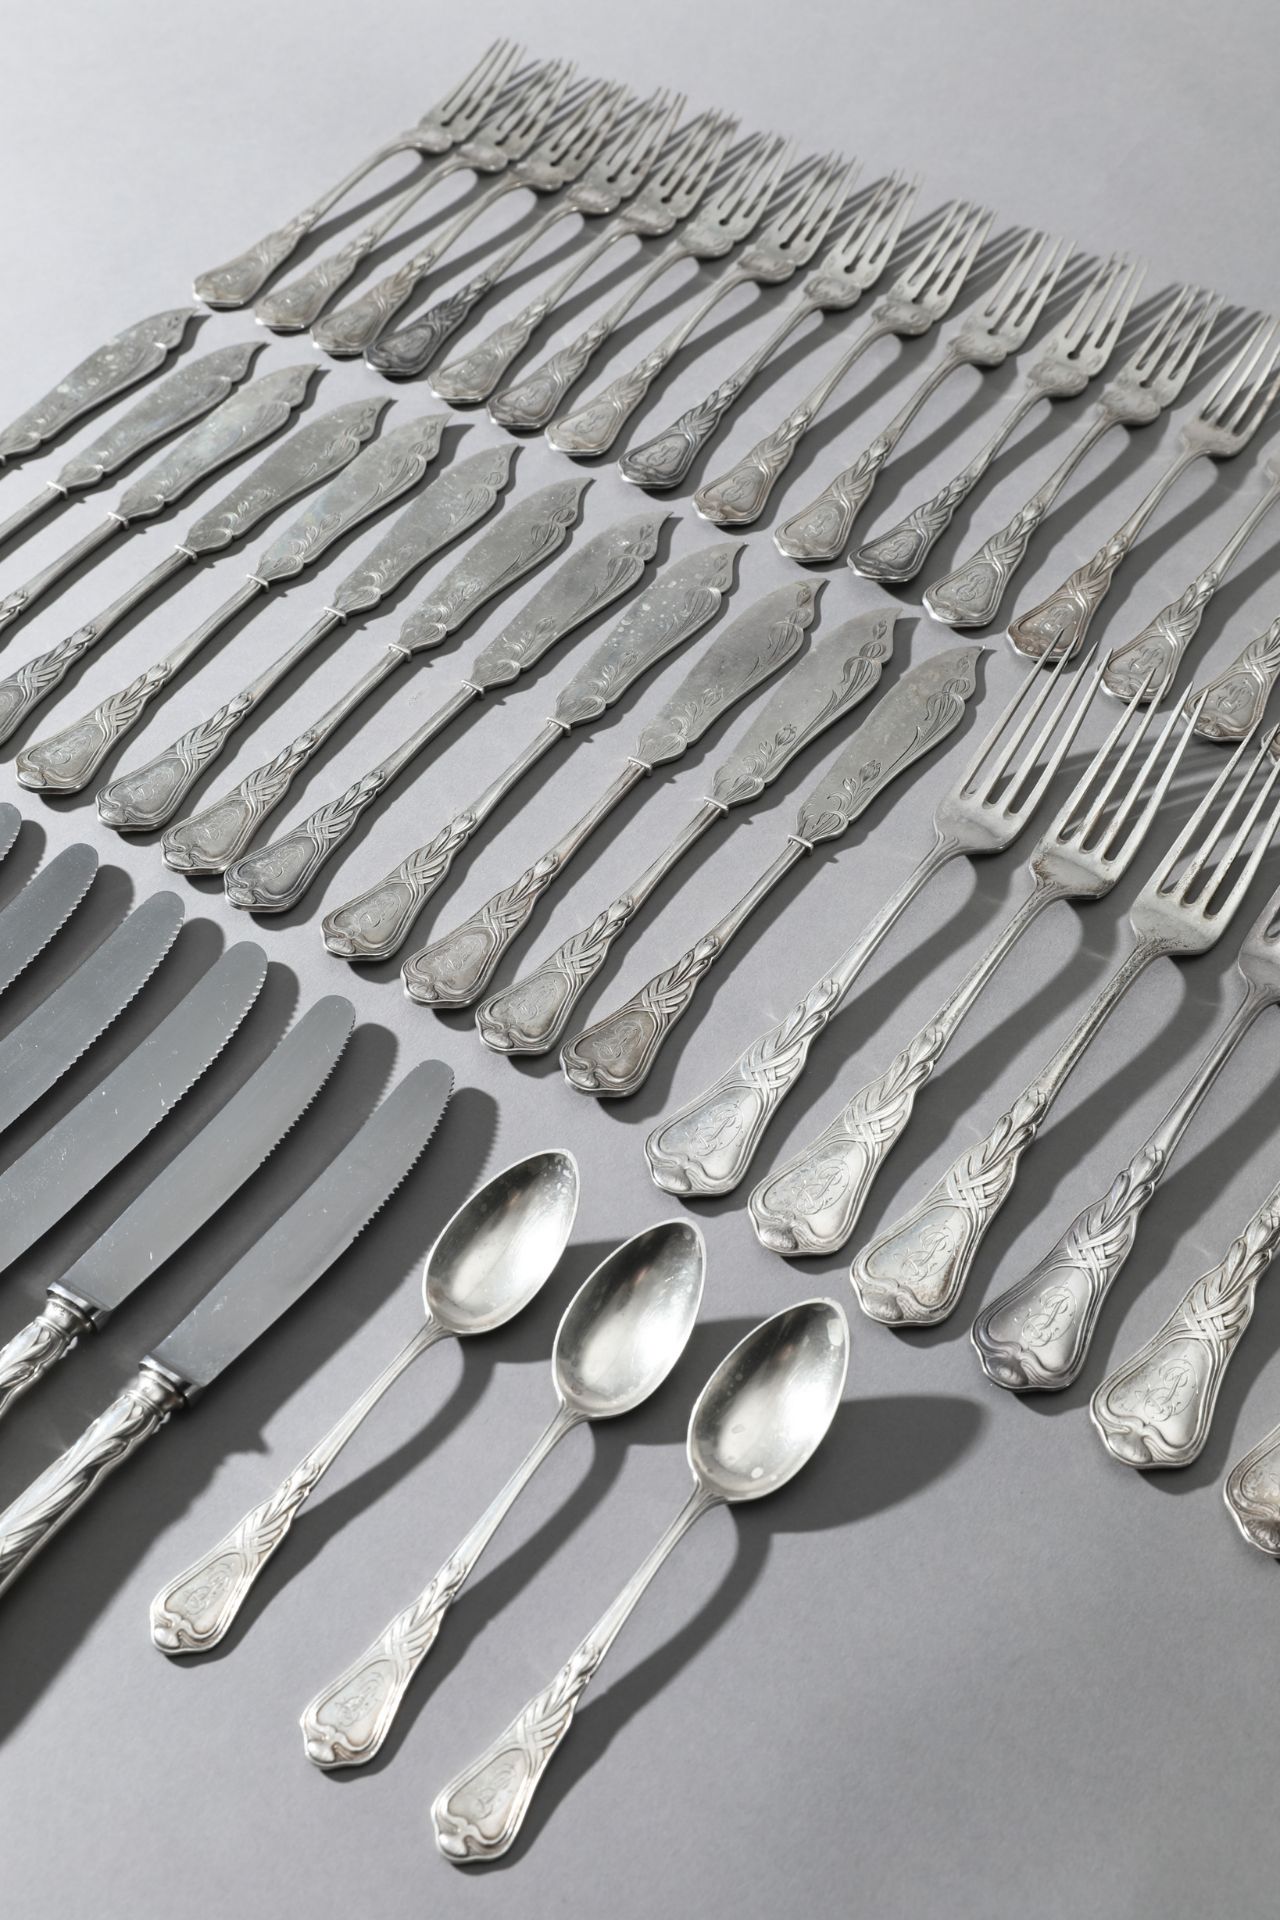 Heinrich Vogeler, Wilkens, Silver Fish Cutlery and Cutlery Herbstzeitlose, 48 pieces